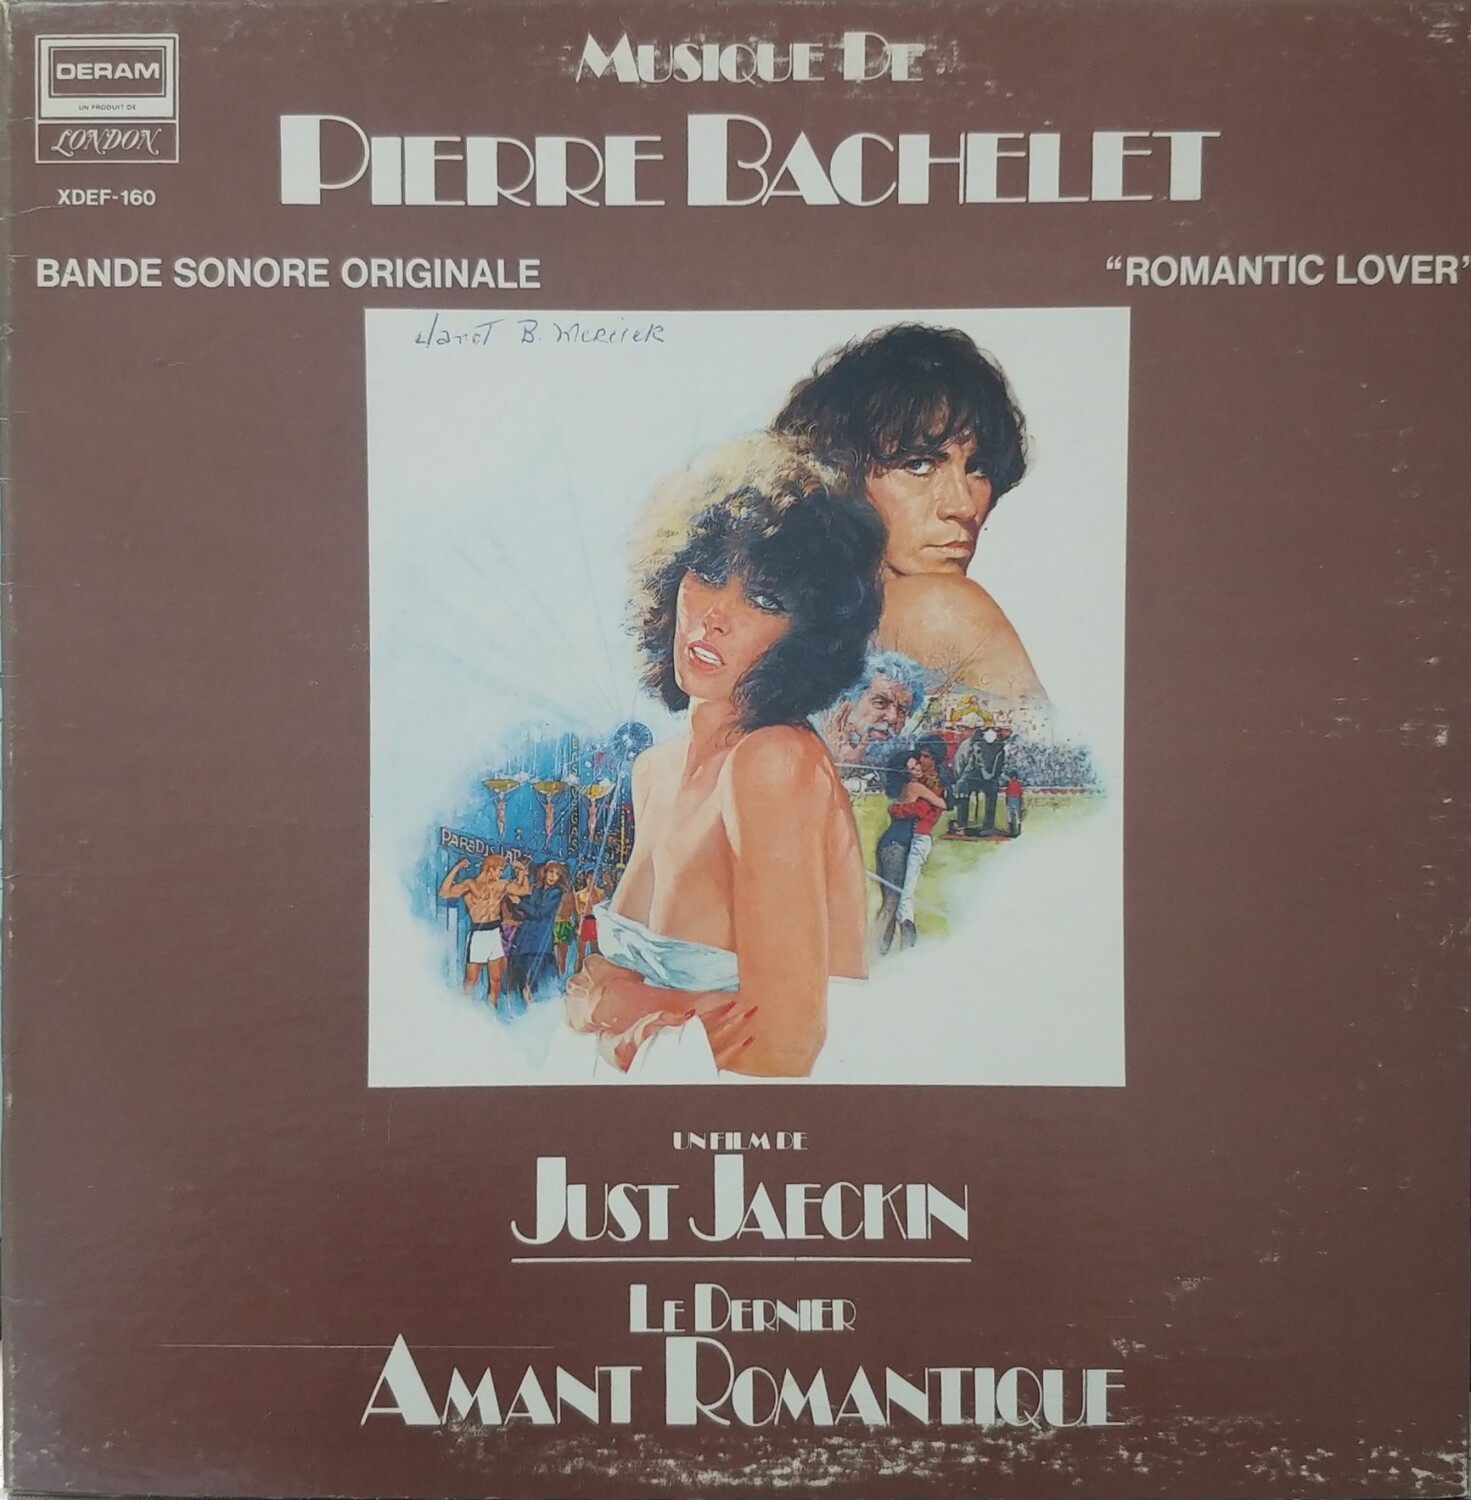 Pierre Bachelet - Le dernier amant romantique soundtrack